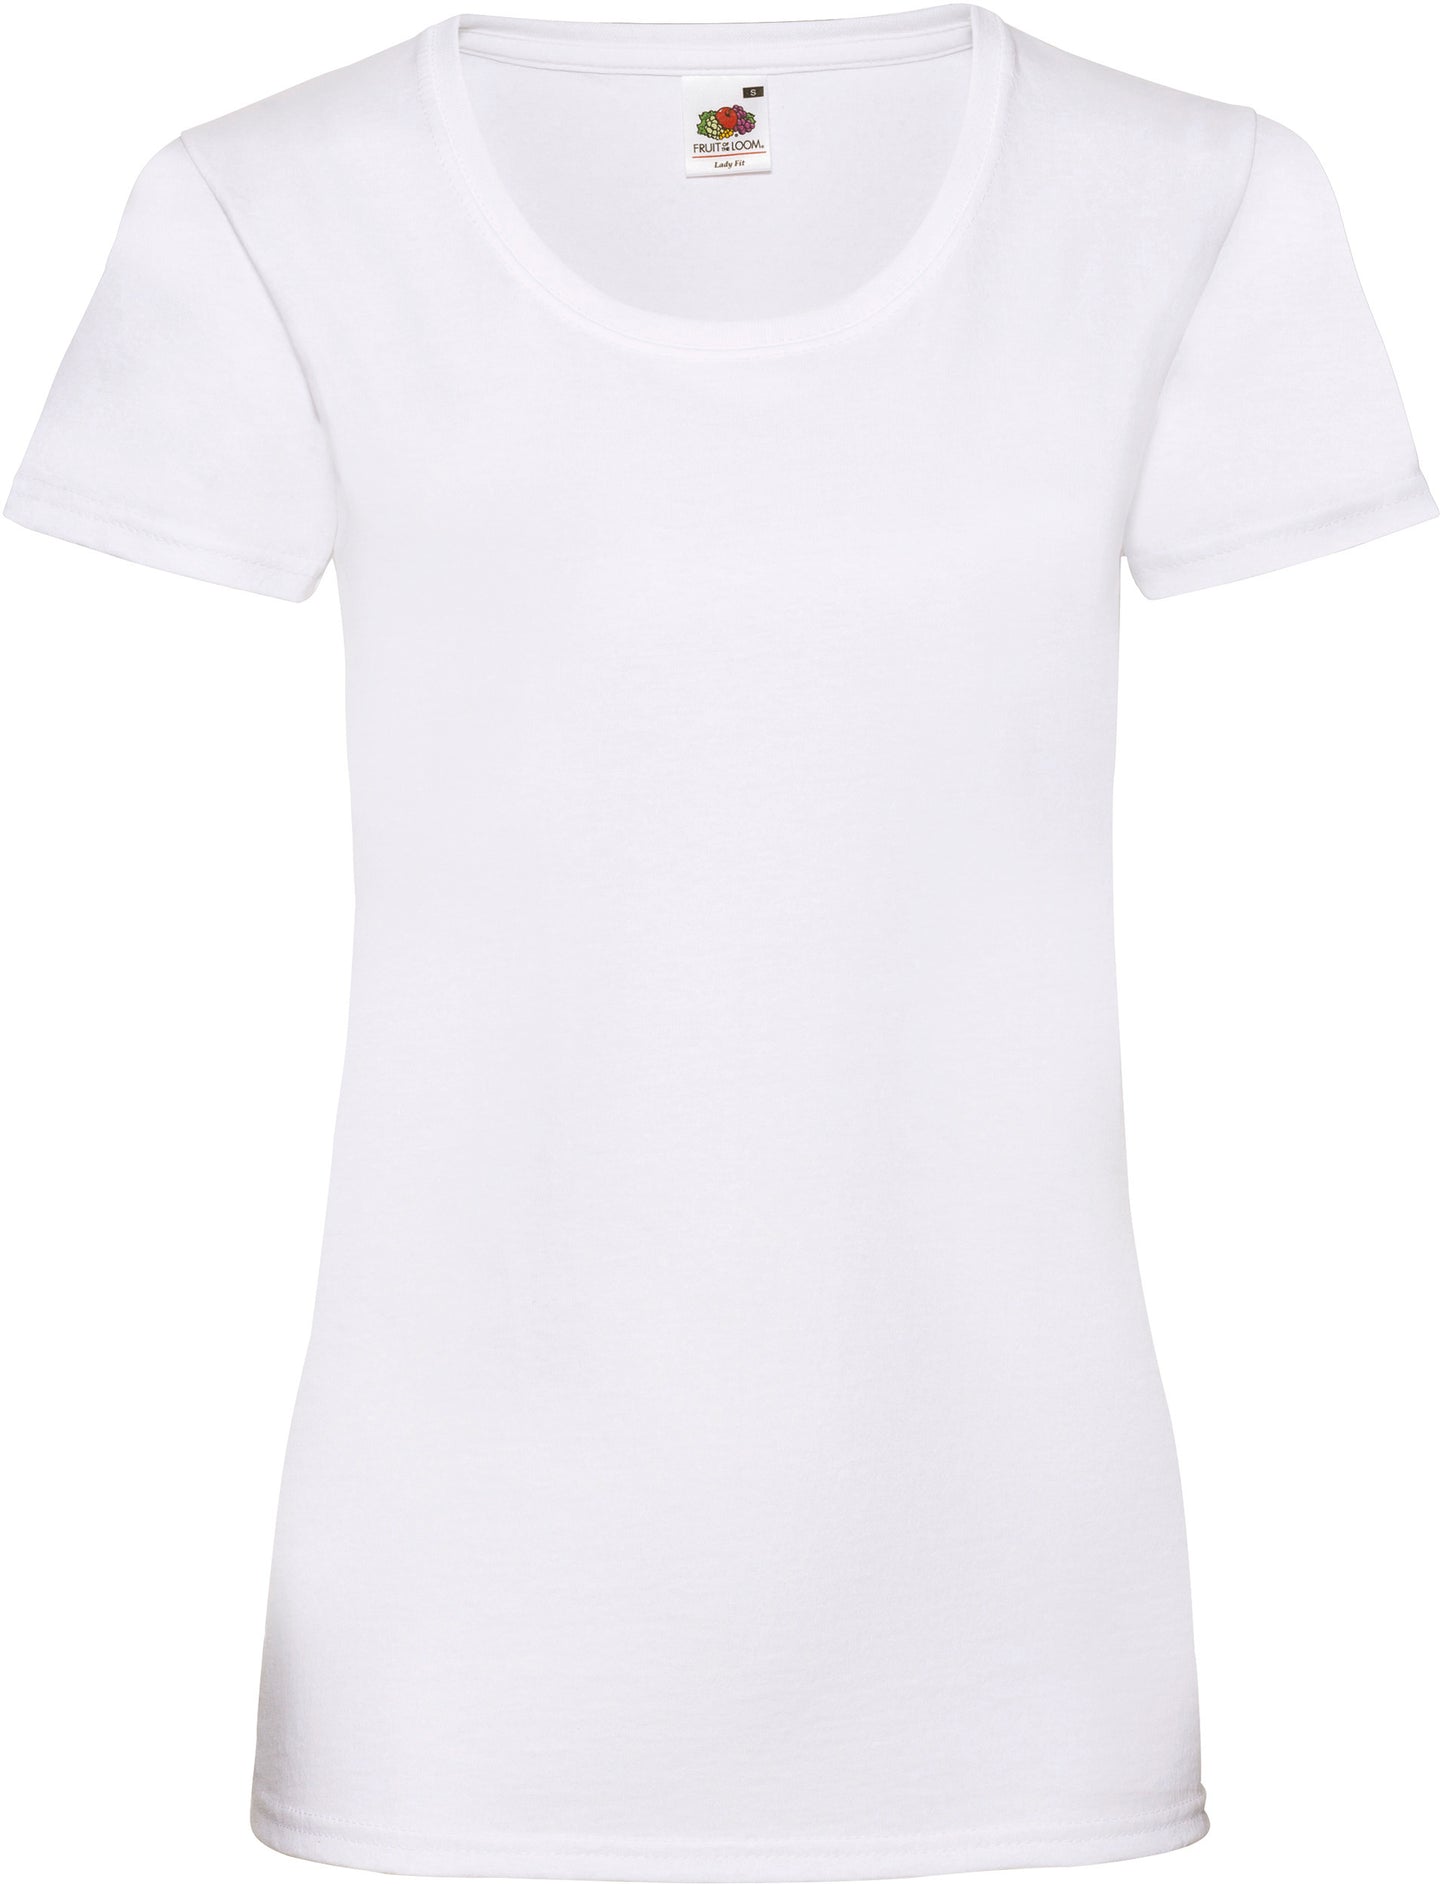 SC61372 - T-shirt femme Valueweight